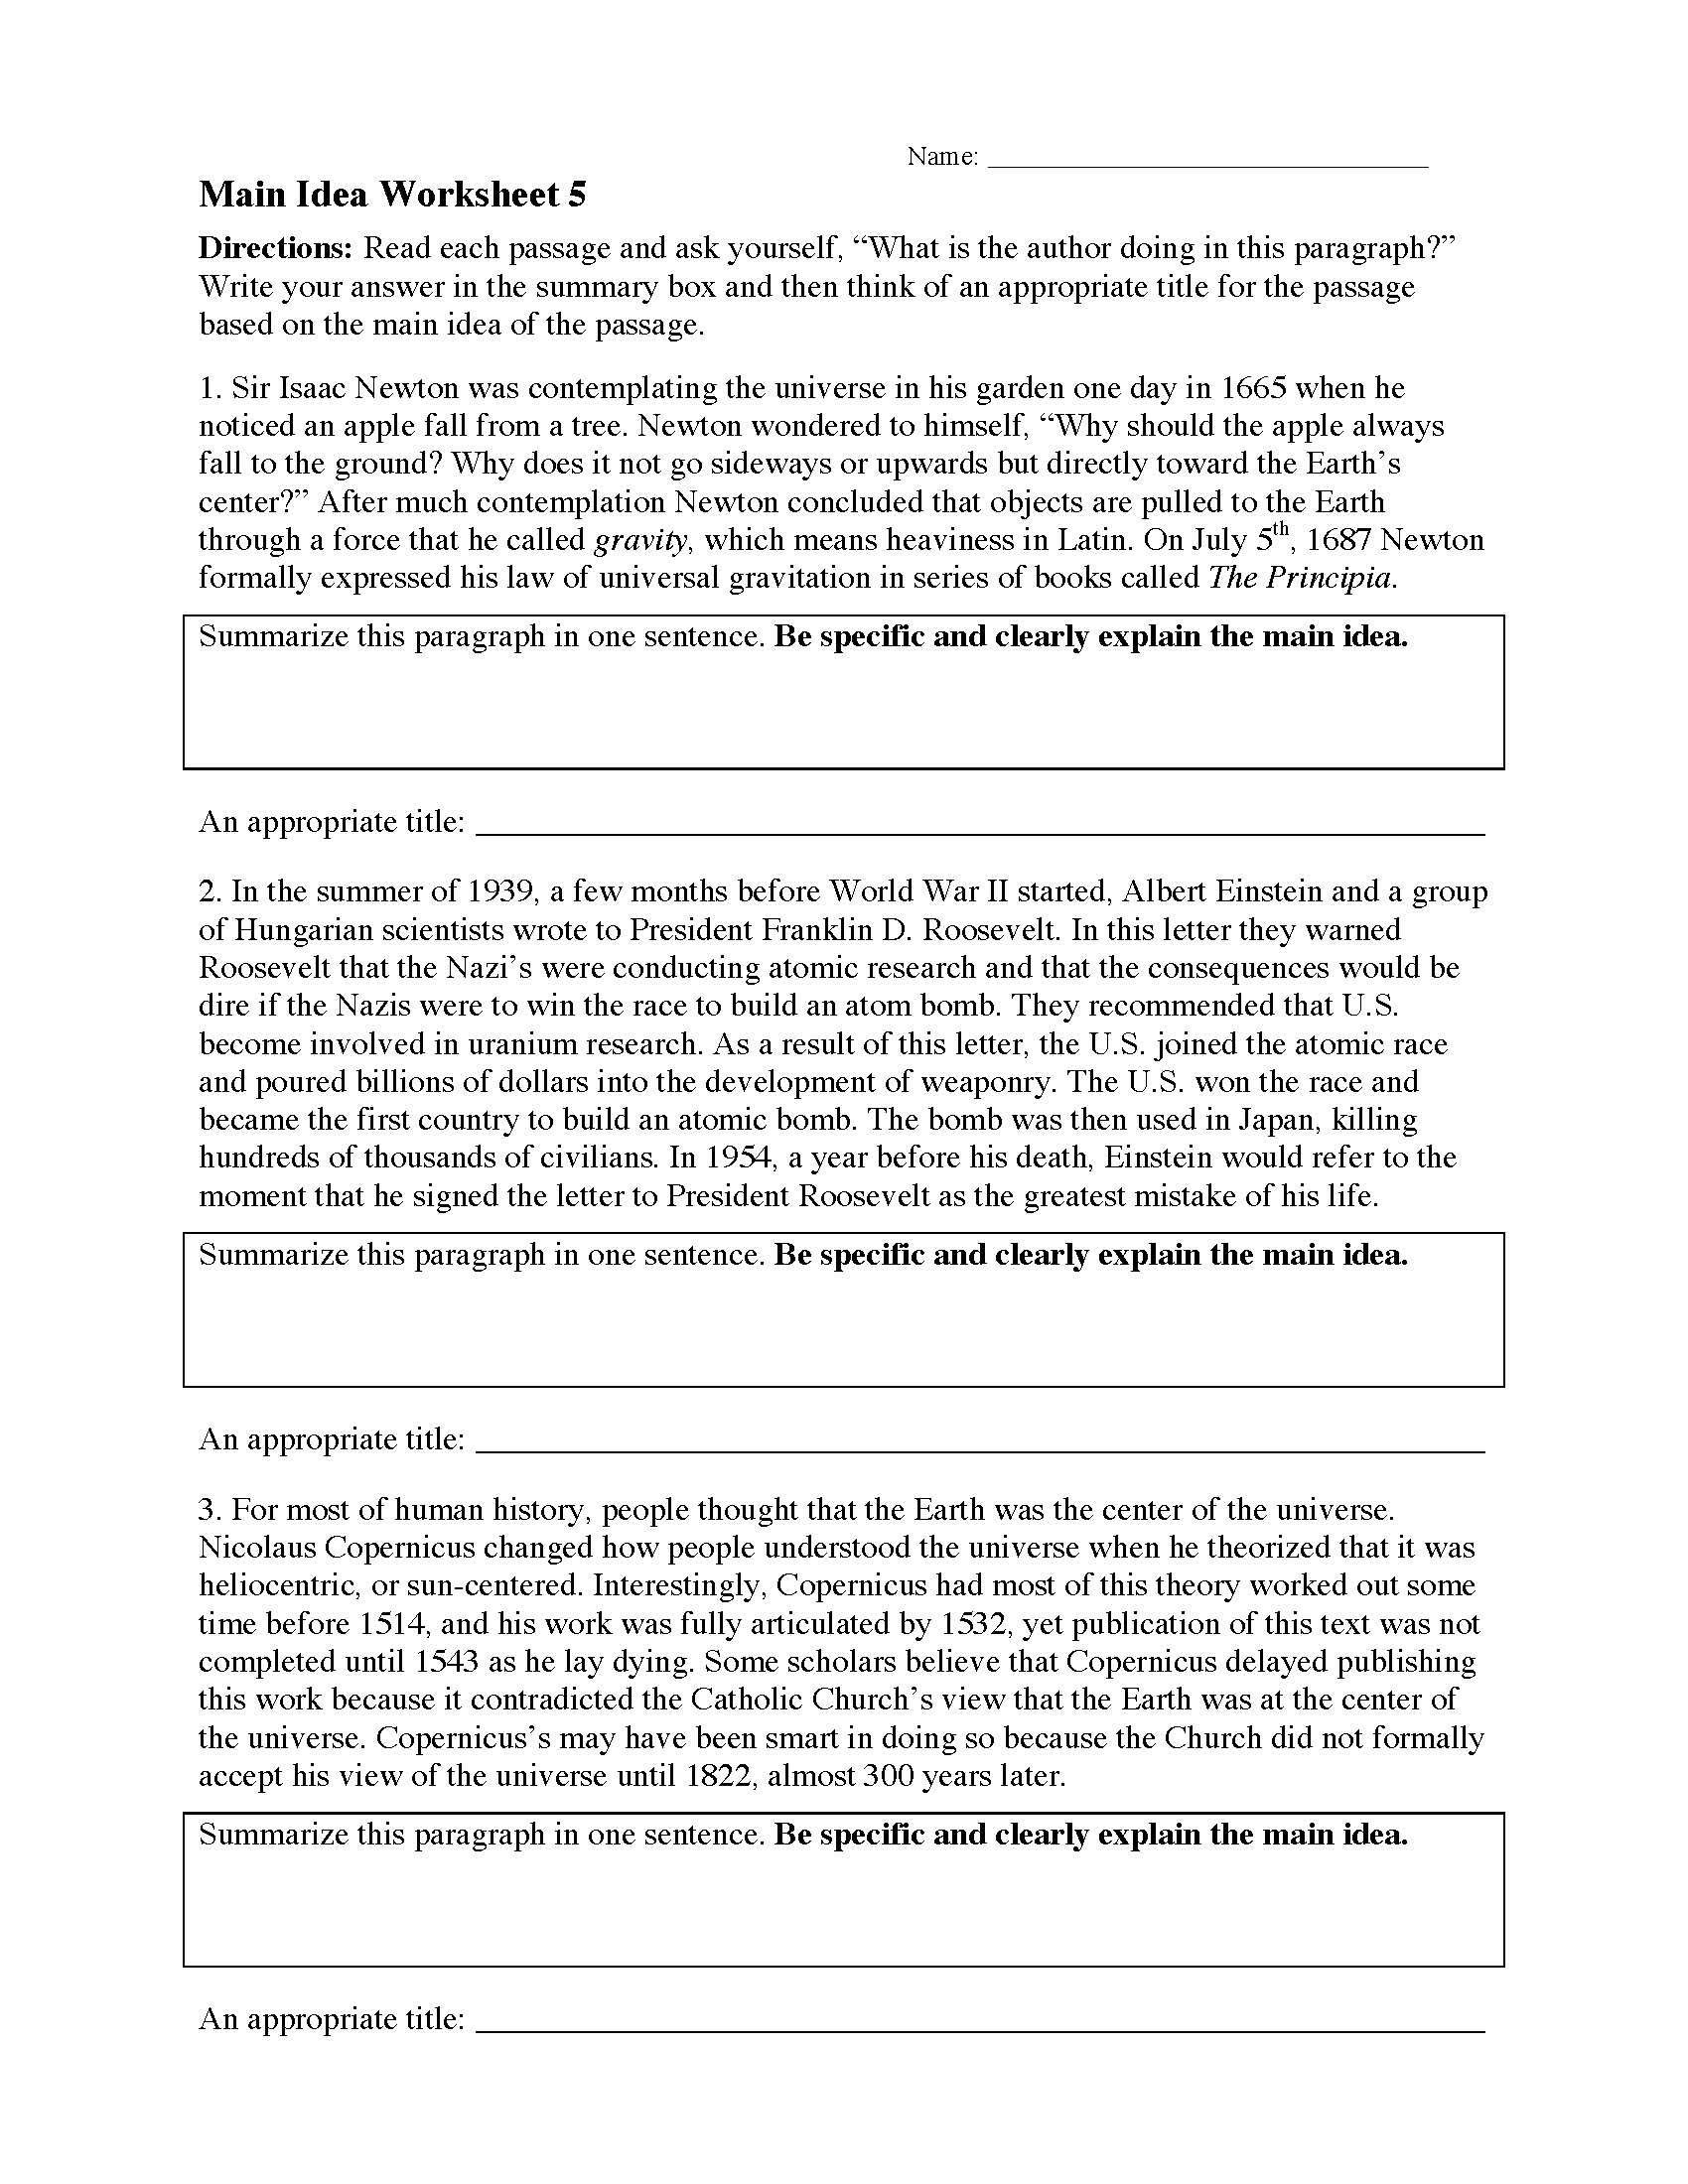 main idea worksheet 5 reading activity